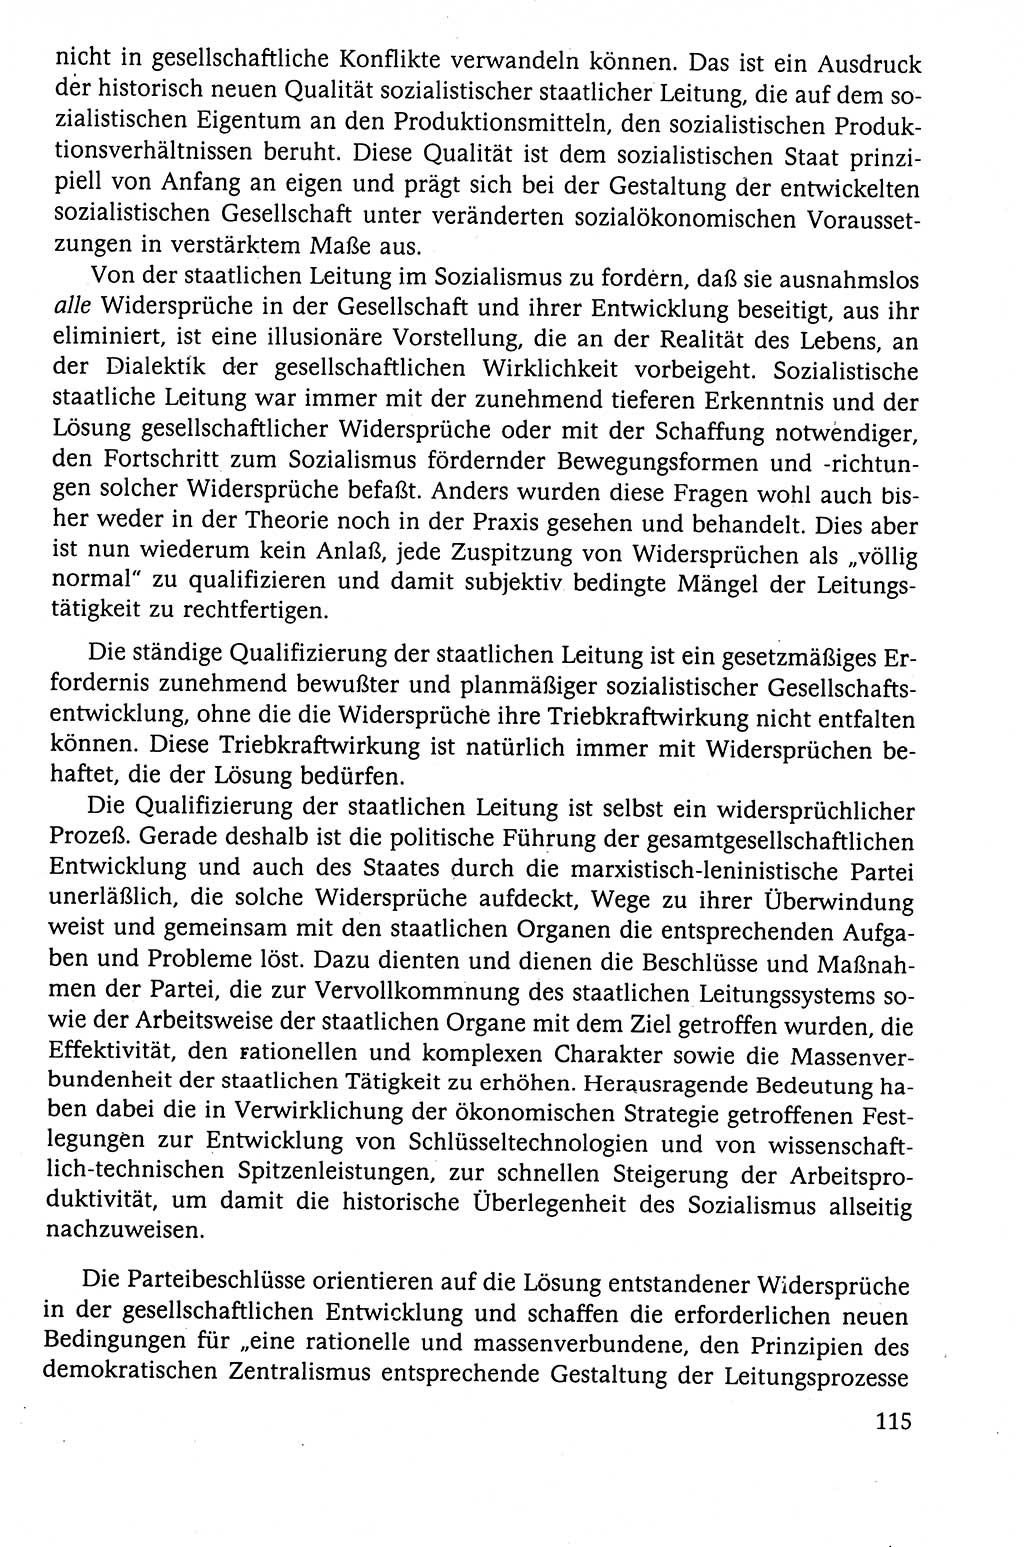 Der Staat im politischen System der DDR (Deutsche Demokratische Republik) 1986, Seite 115 (St. pol. Sys. DDR 1986, S. 115)